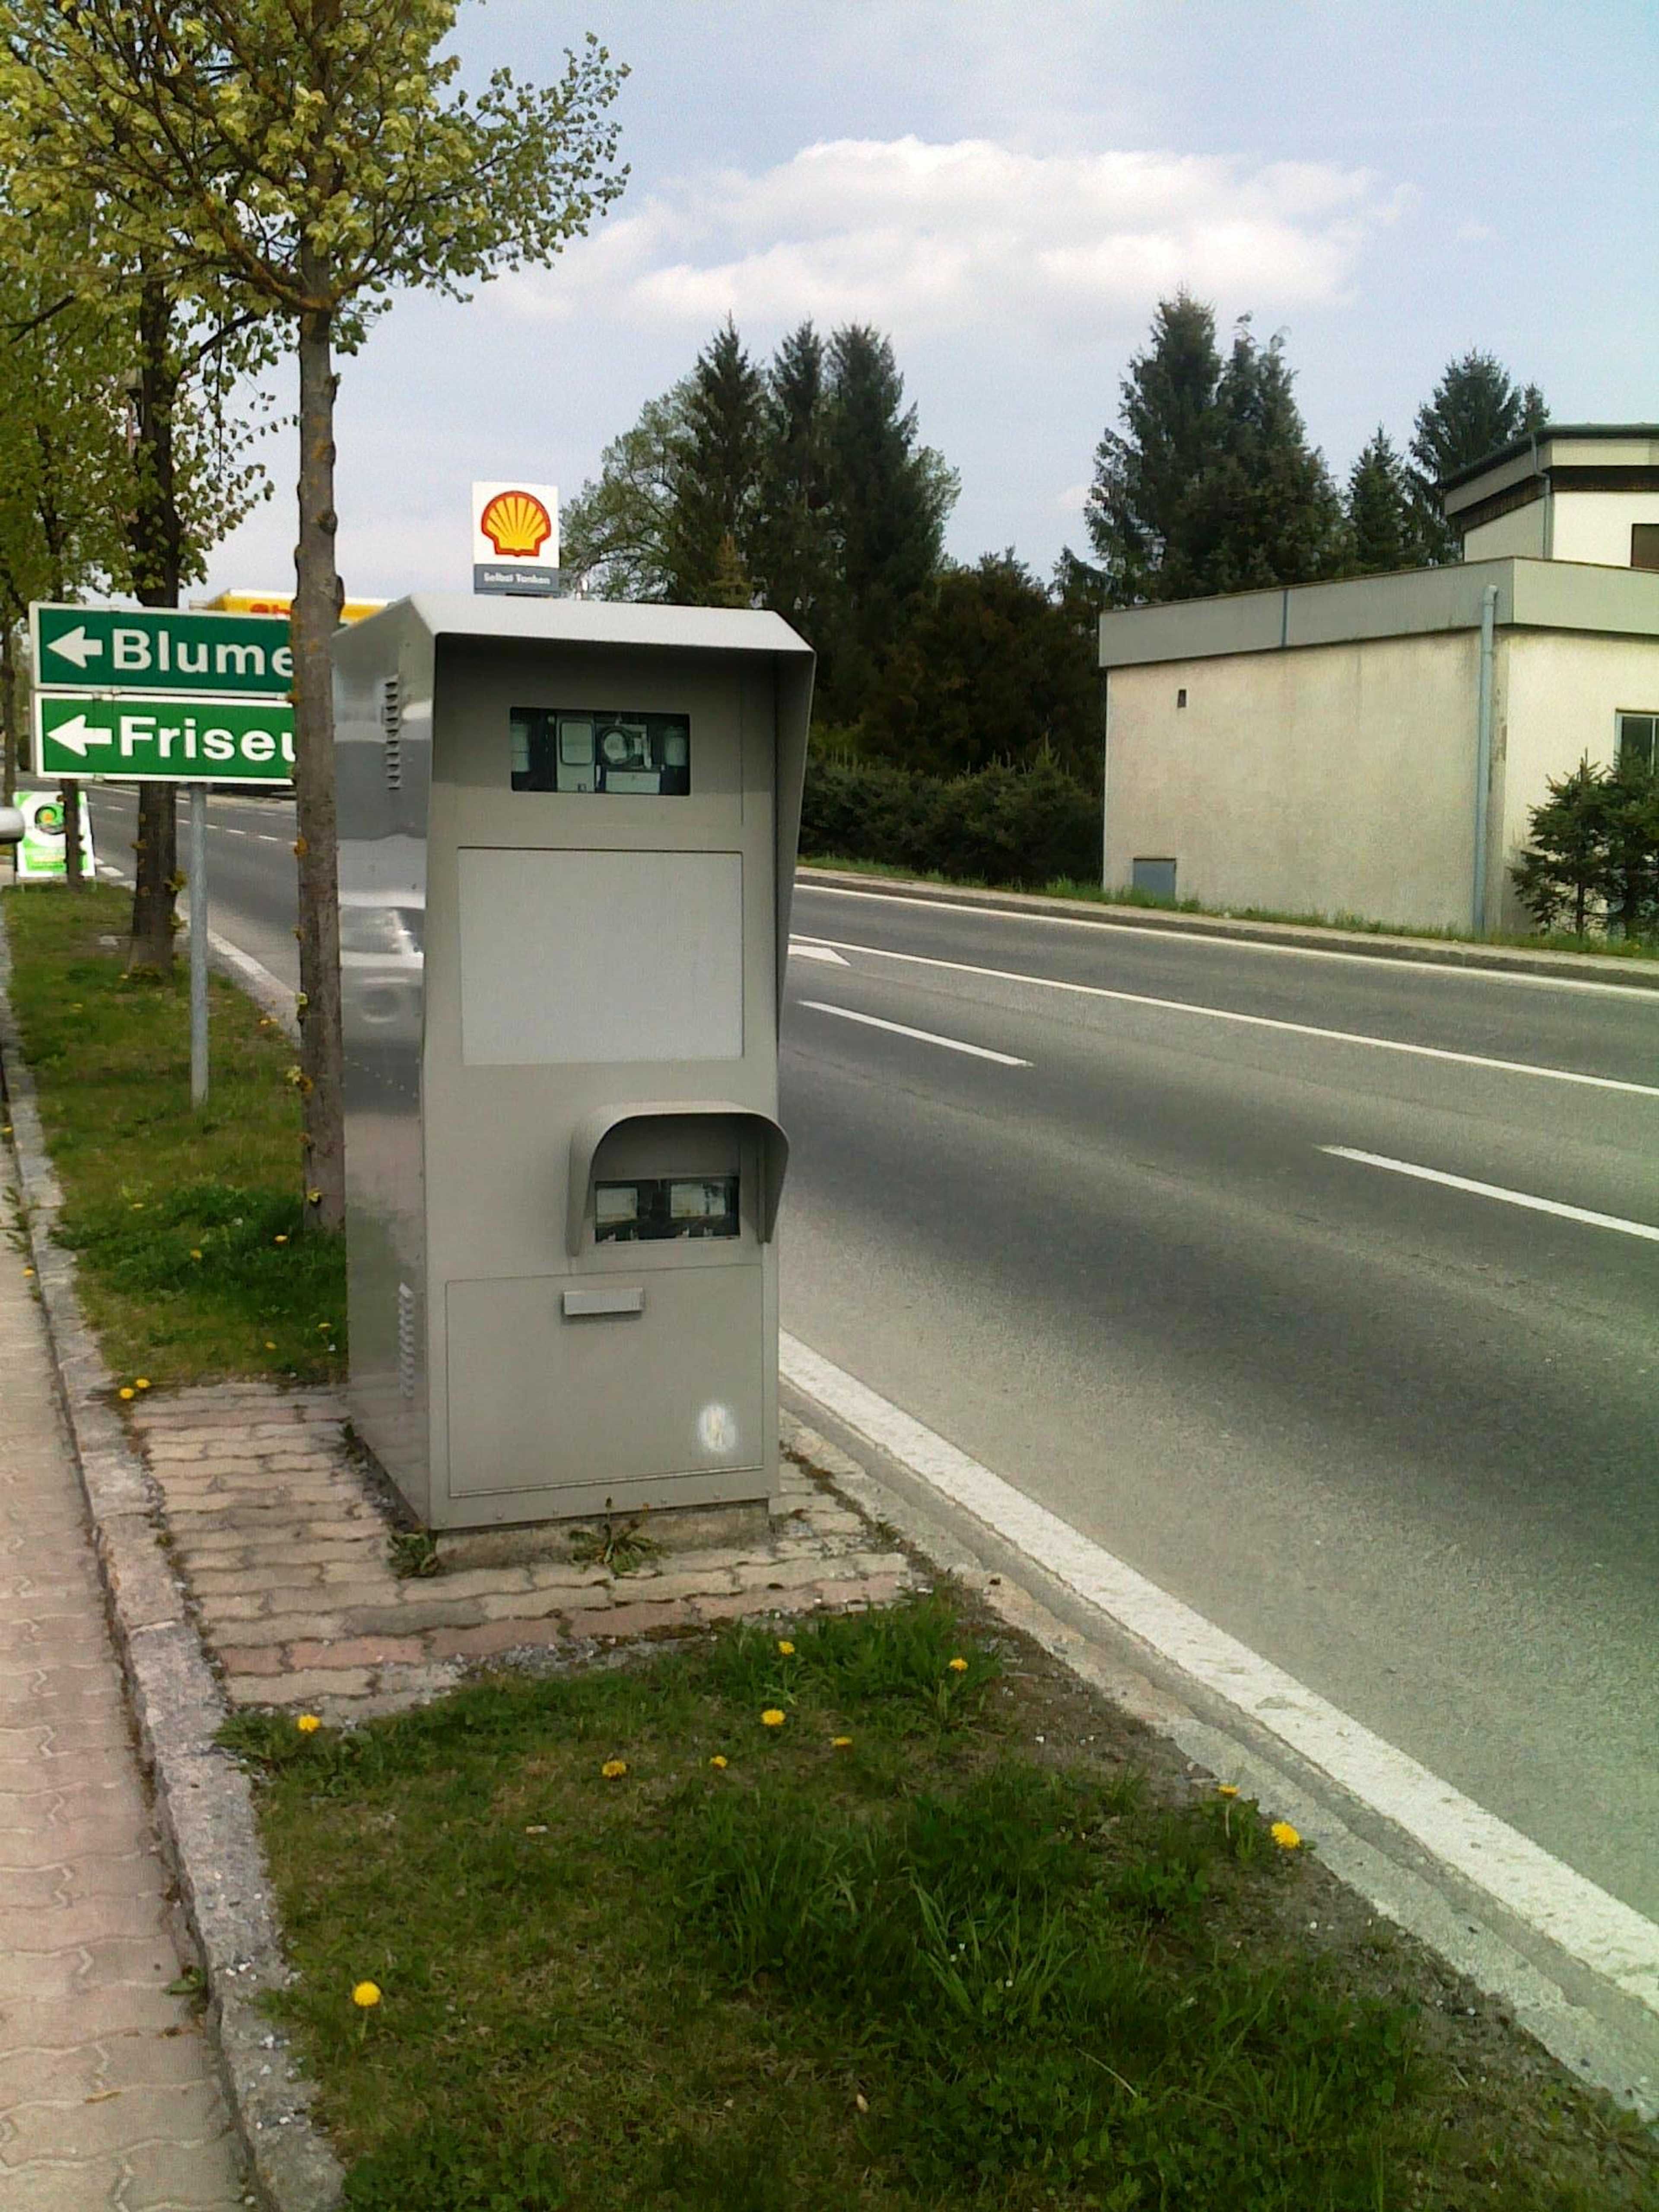 Speed camera in Austria